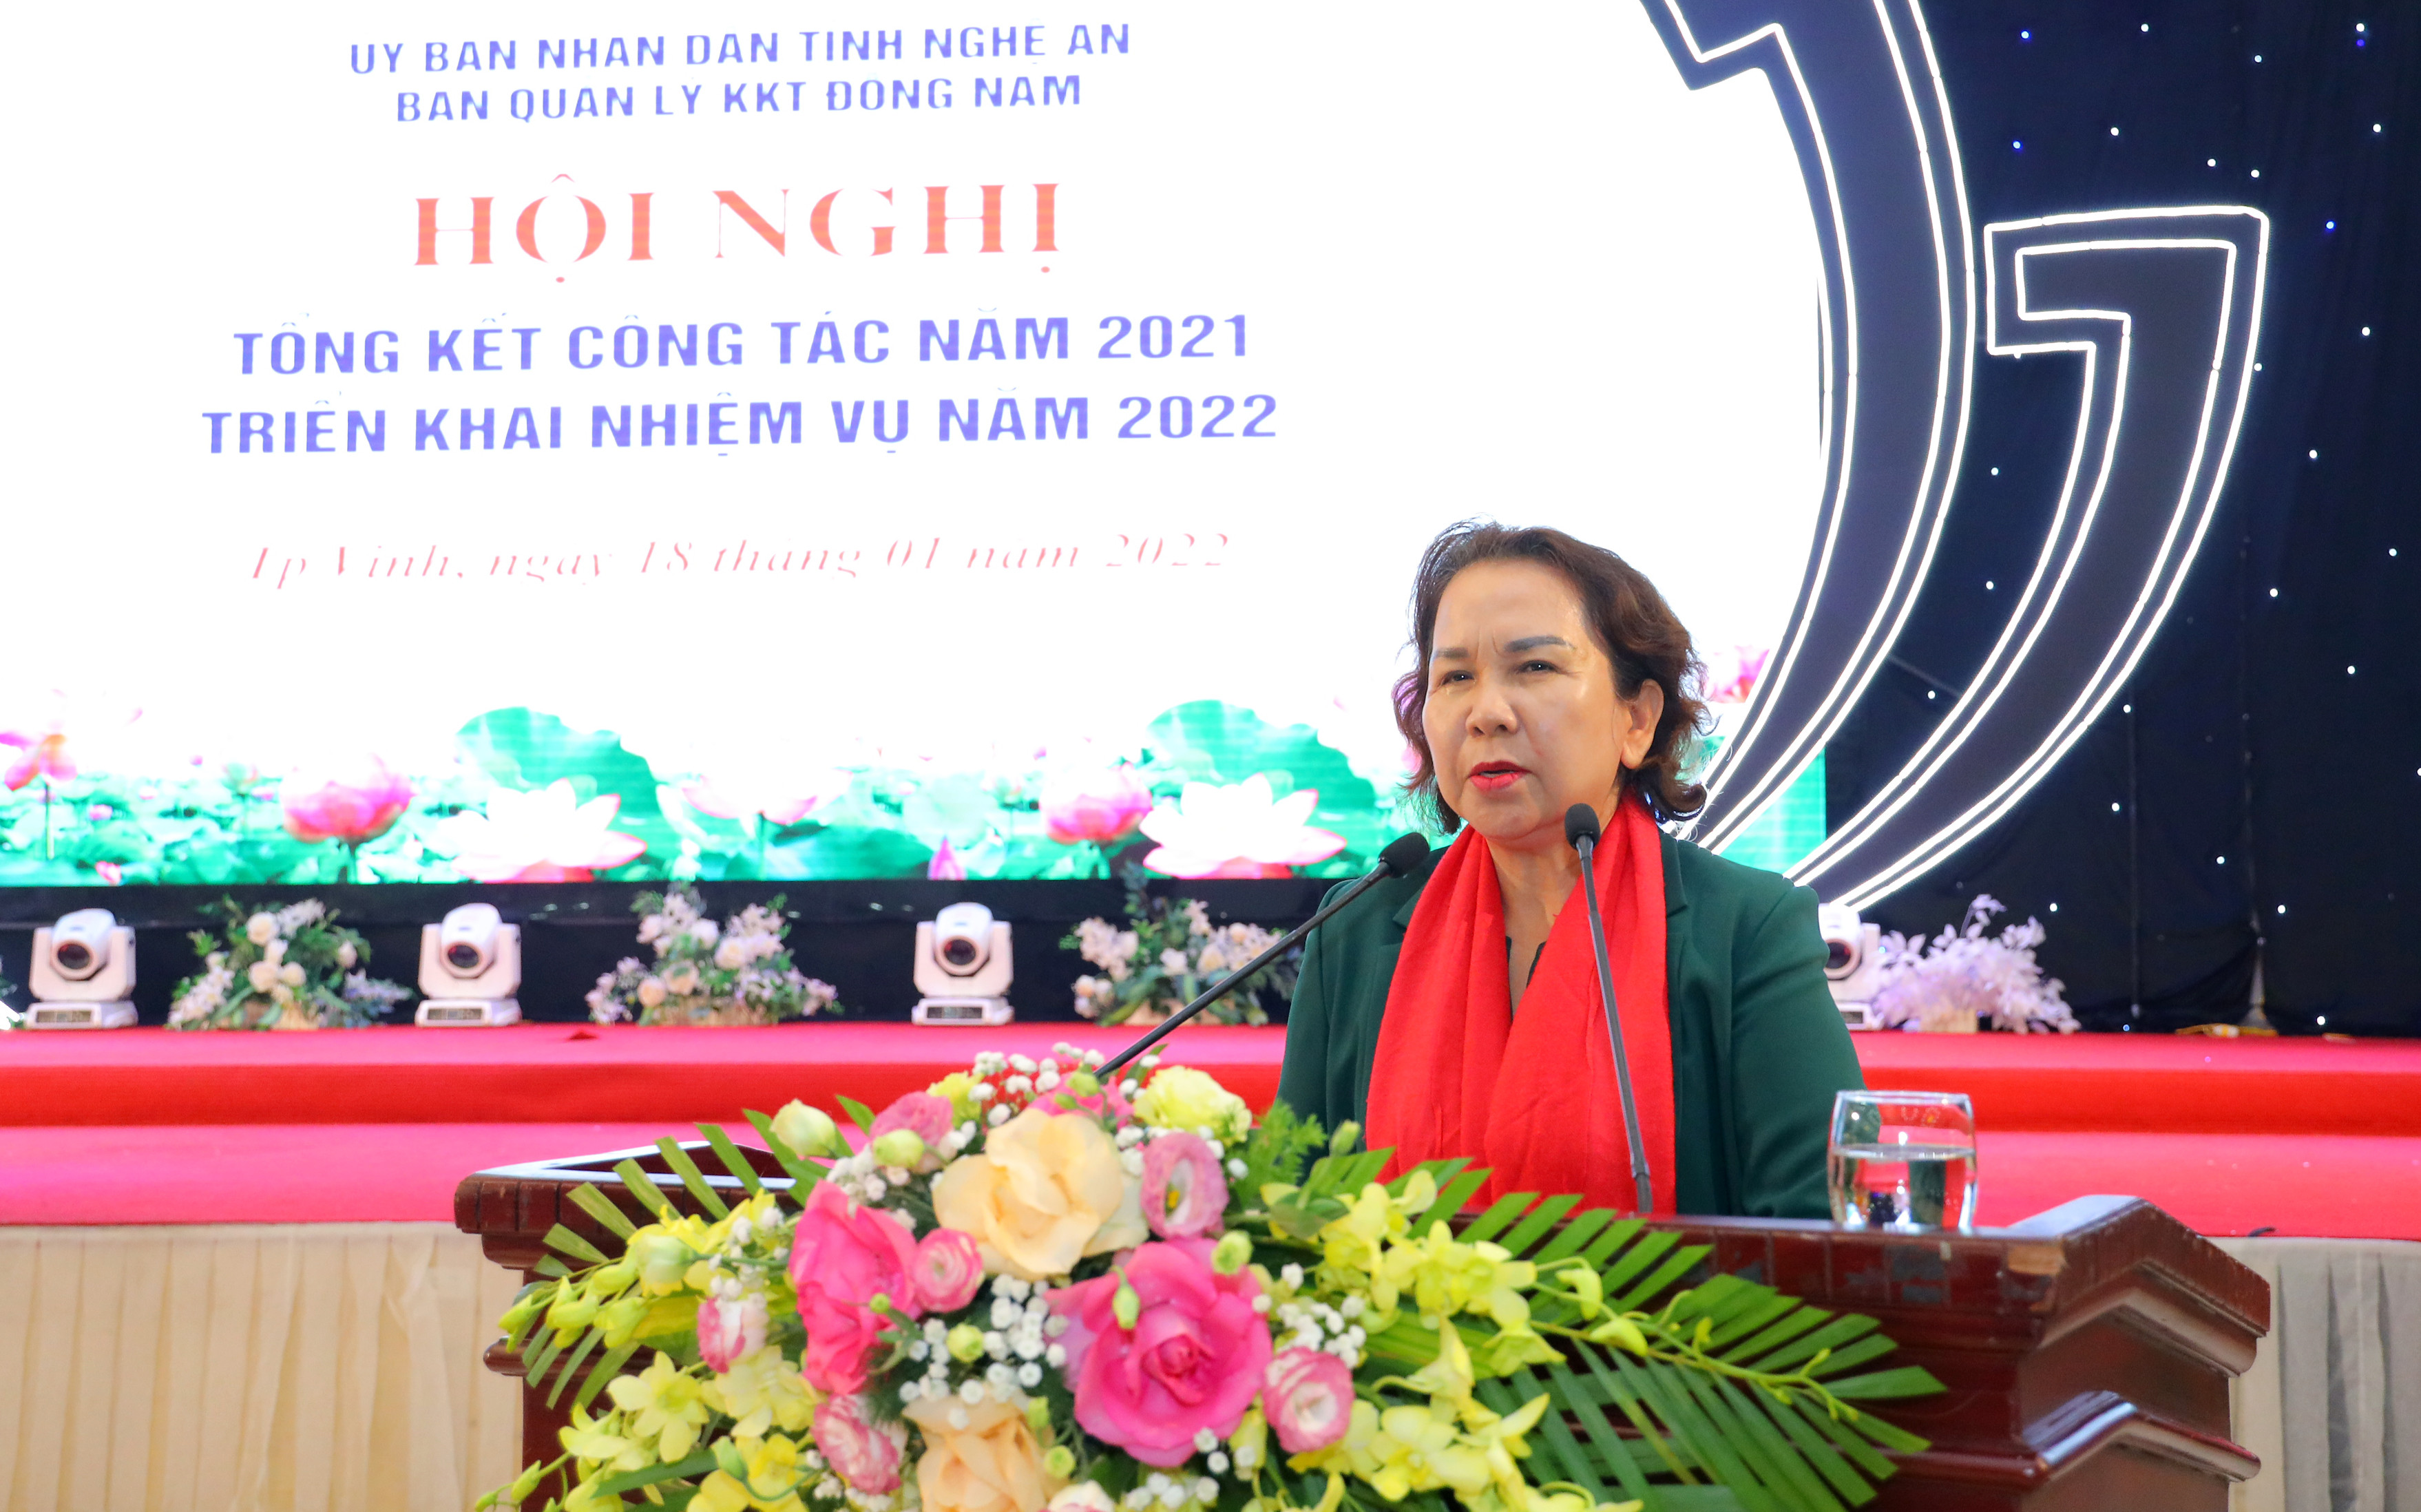 Bà Chu Thị Thành - Chủ tịch HĐQT Công ty cổ phần Tập đoàn Thiên Minh Đức phát biểu tại hội nghị. Ảnh Nguyên Sơn